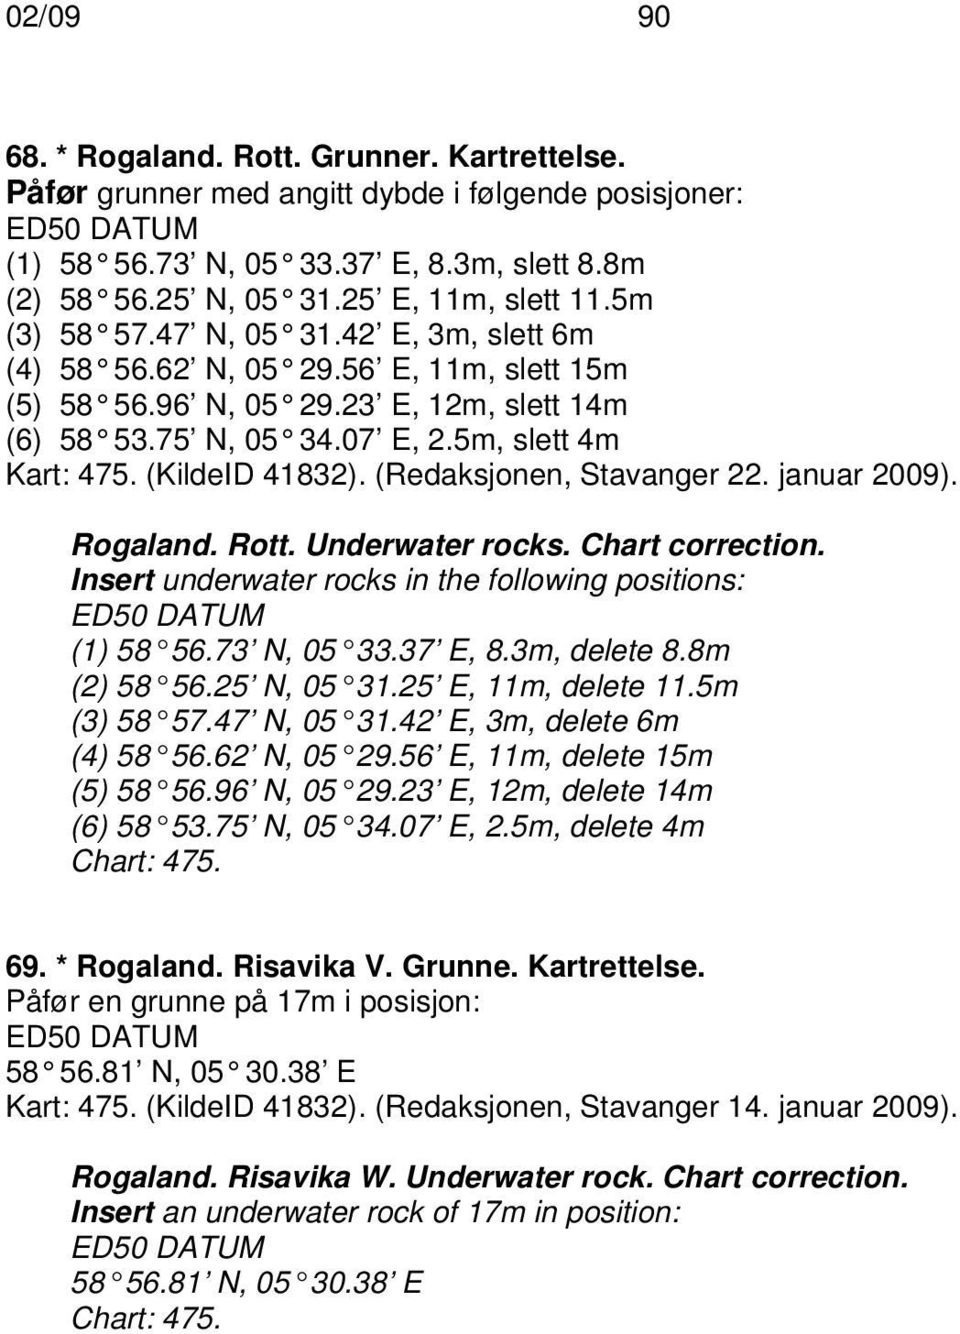 (Redaksjonen, Stavanger 22. januar 2009). Rogaland. Rott. Underwater rocks. Chart correction. Insert underwater rocks in the following positions: (1) 58 56.73 N, 05 33.37 E, 8.3m, delete 8.